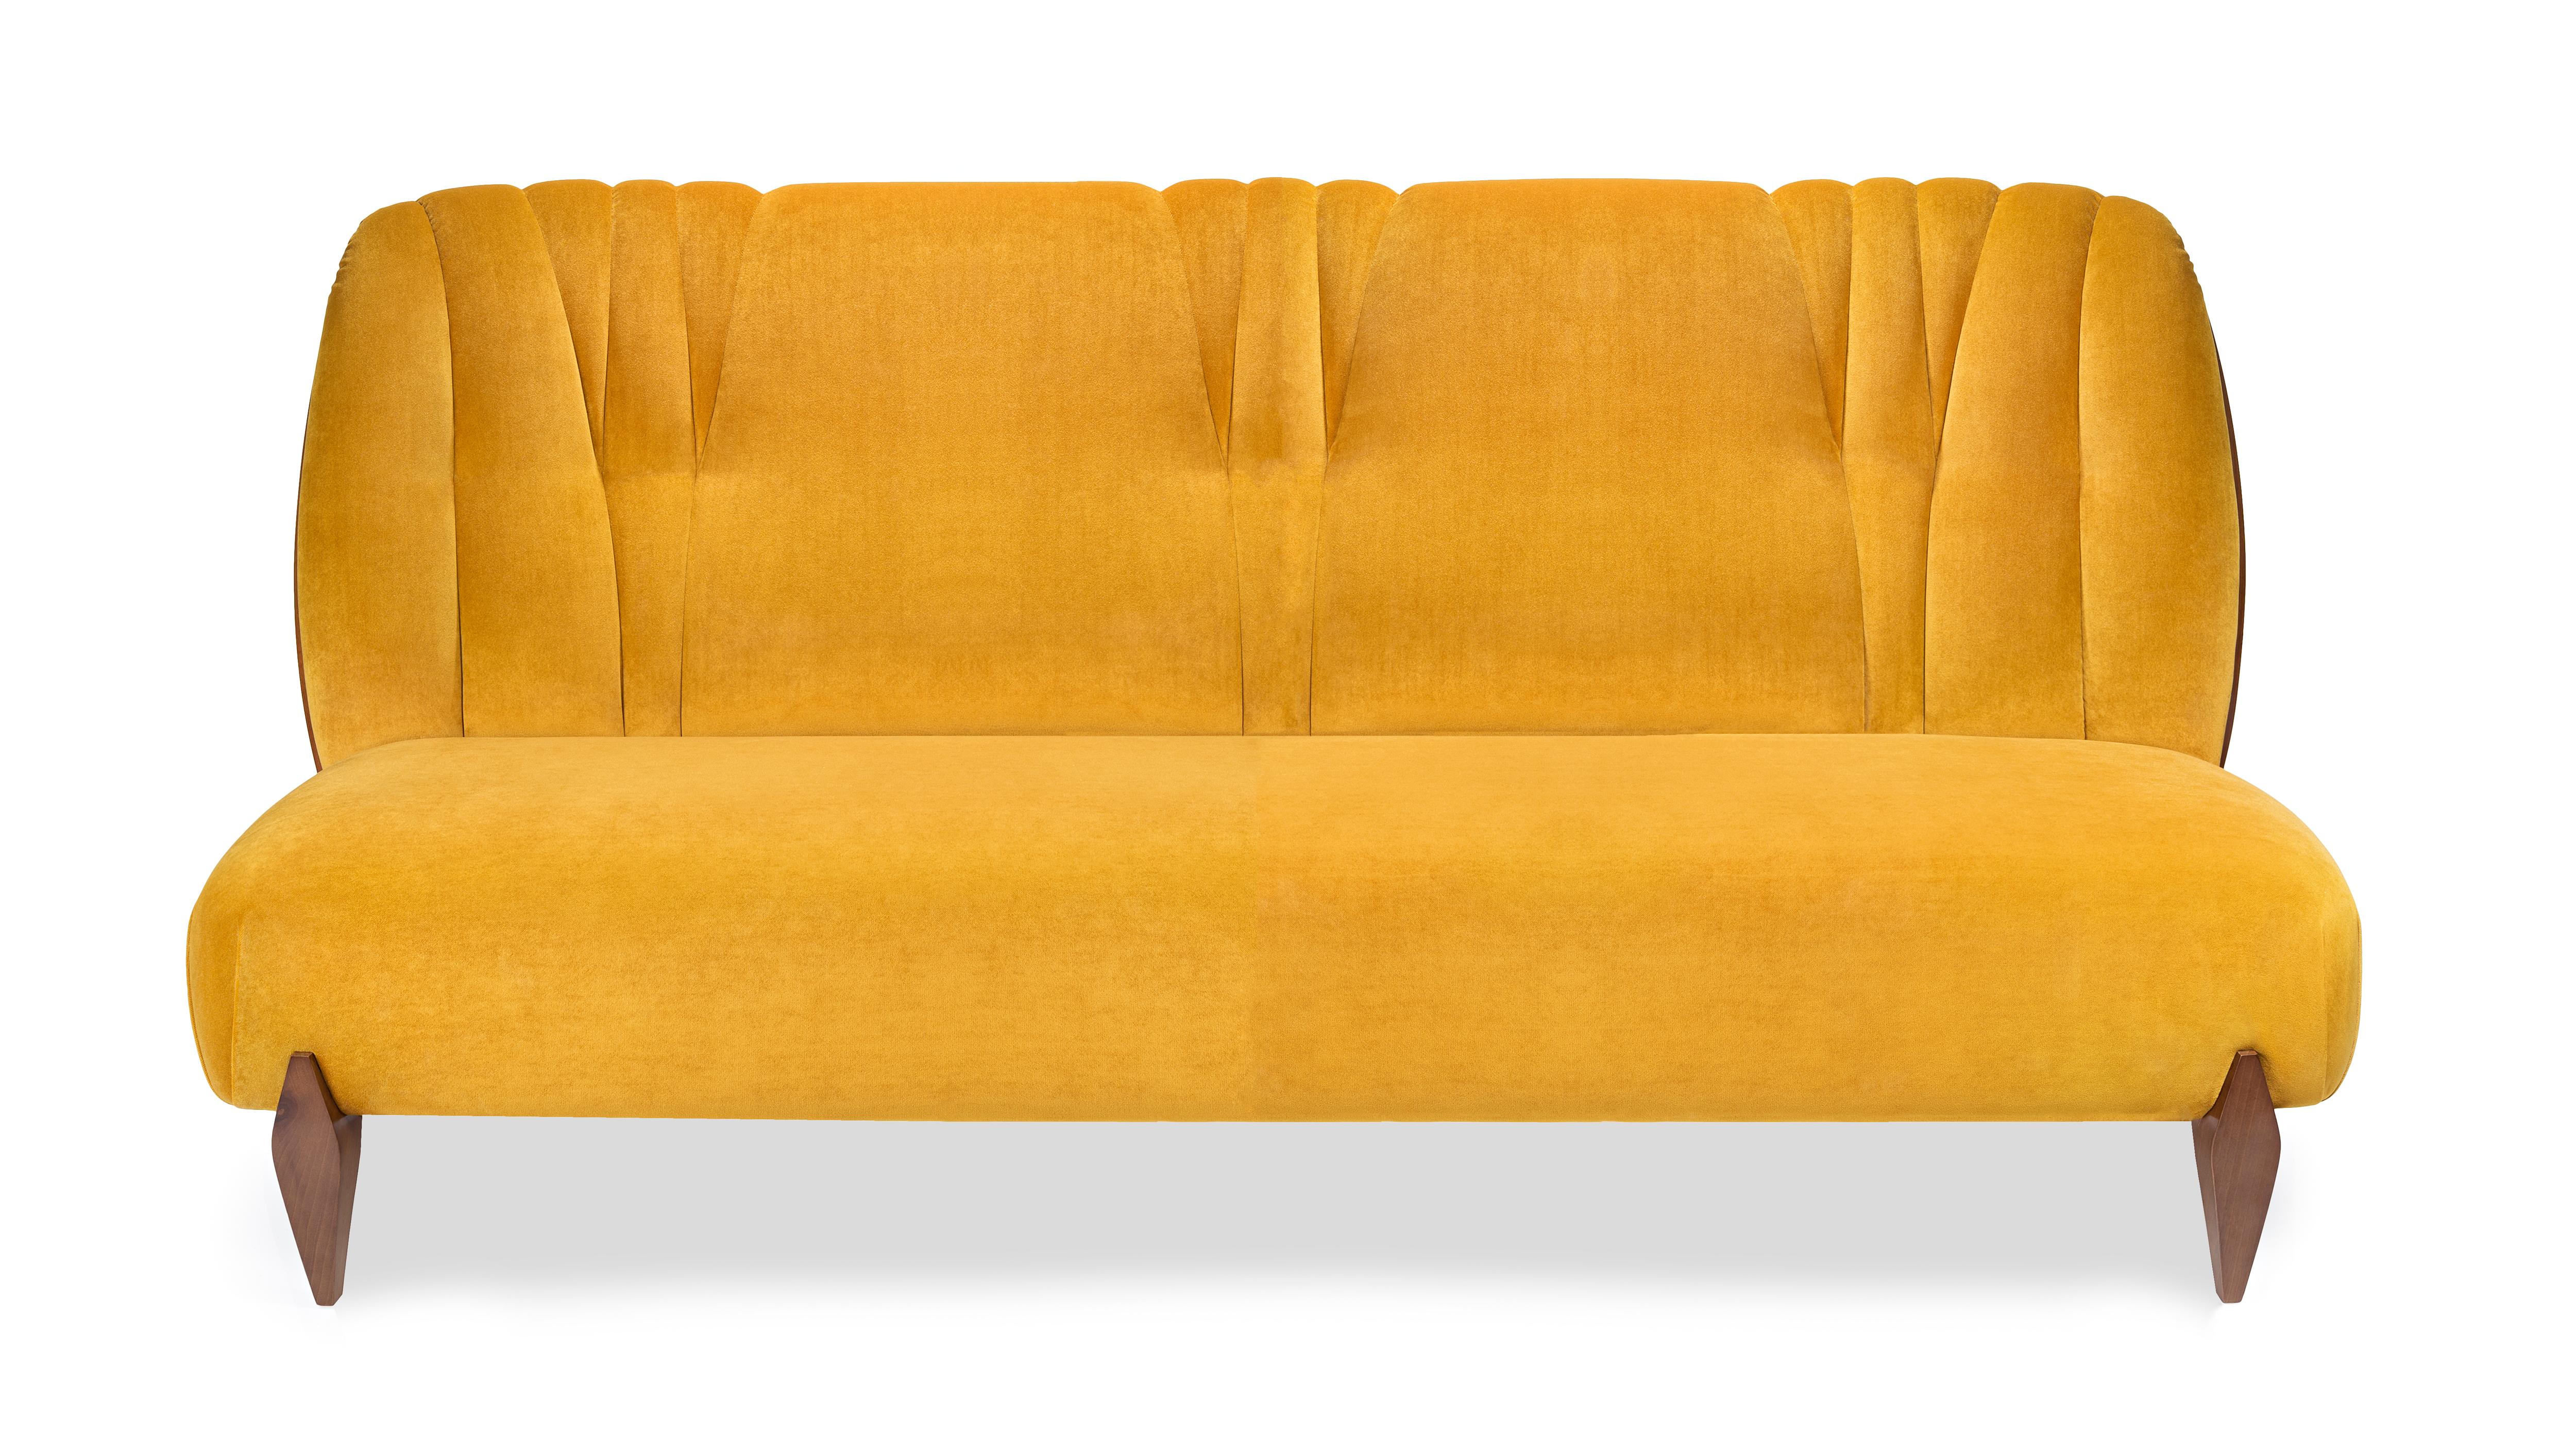 Na Pali 3-Sitz-Sofa von InsidherLand
Abmessungen: T 82 x B 190 x H 95 cm.
MATERIALIEN: Nussbaum, InsidherLand Bright Velvet Ref. Goldener Stoff.
60 kg.
Erhältlich in verschiedenen Stoffen.

Das Na Pali Sofa wurde als Original-Sessel entworfen und